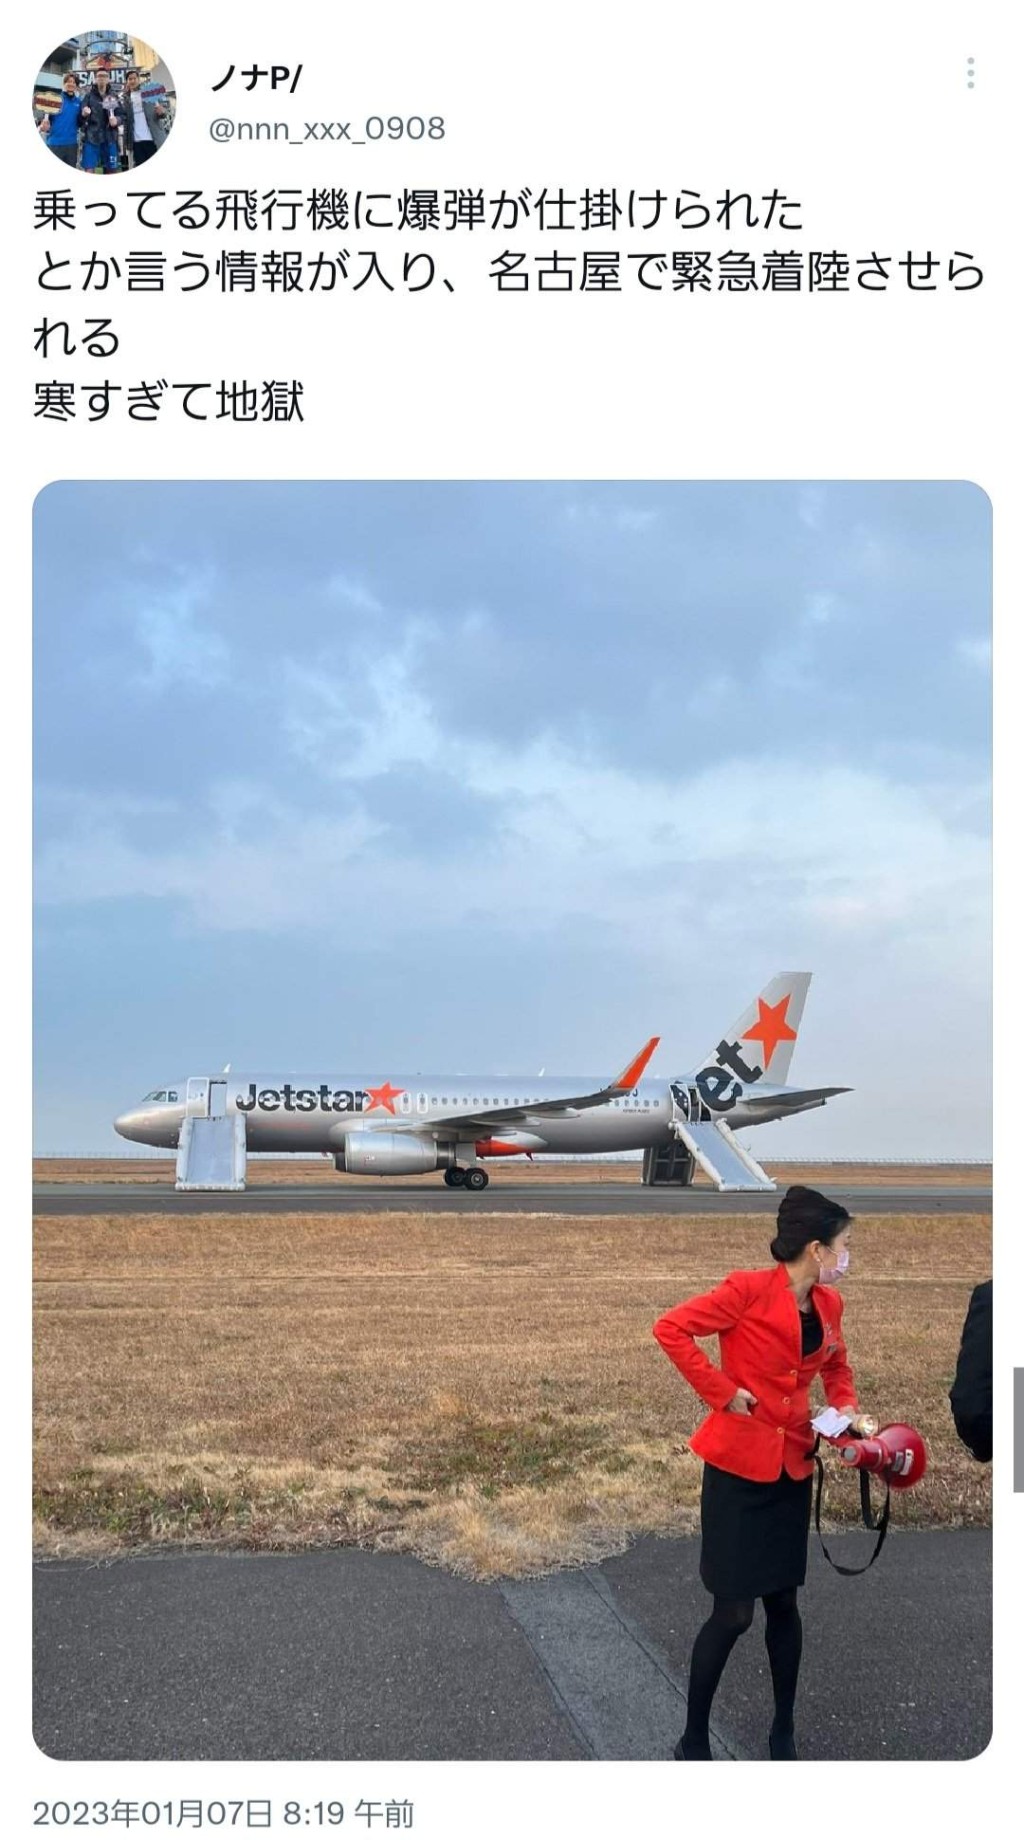 网民在社交媒体报道捷星日本航空客机迫降事件。